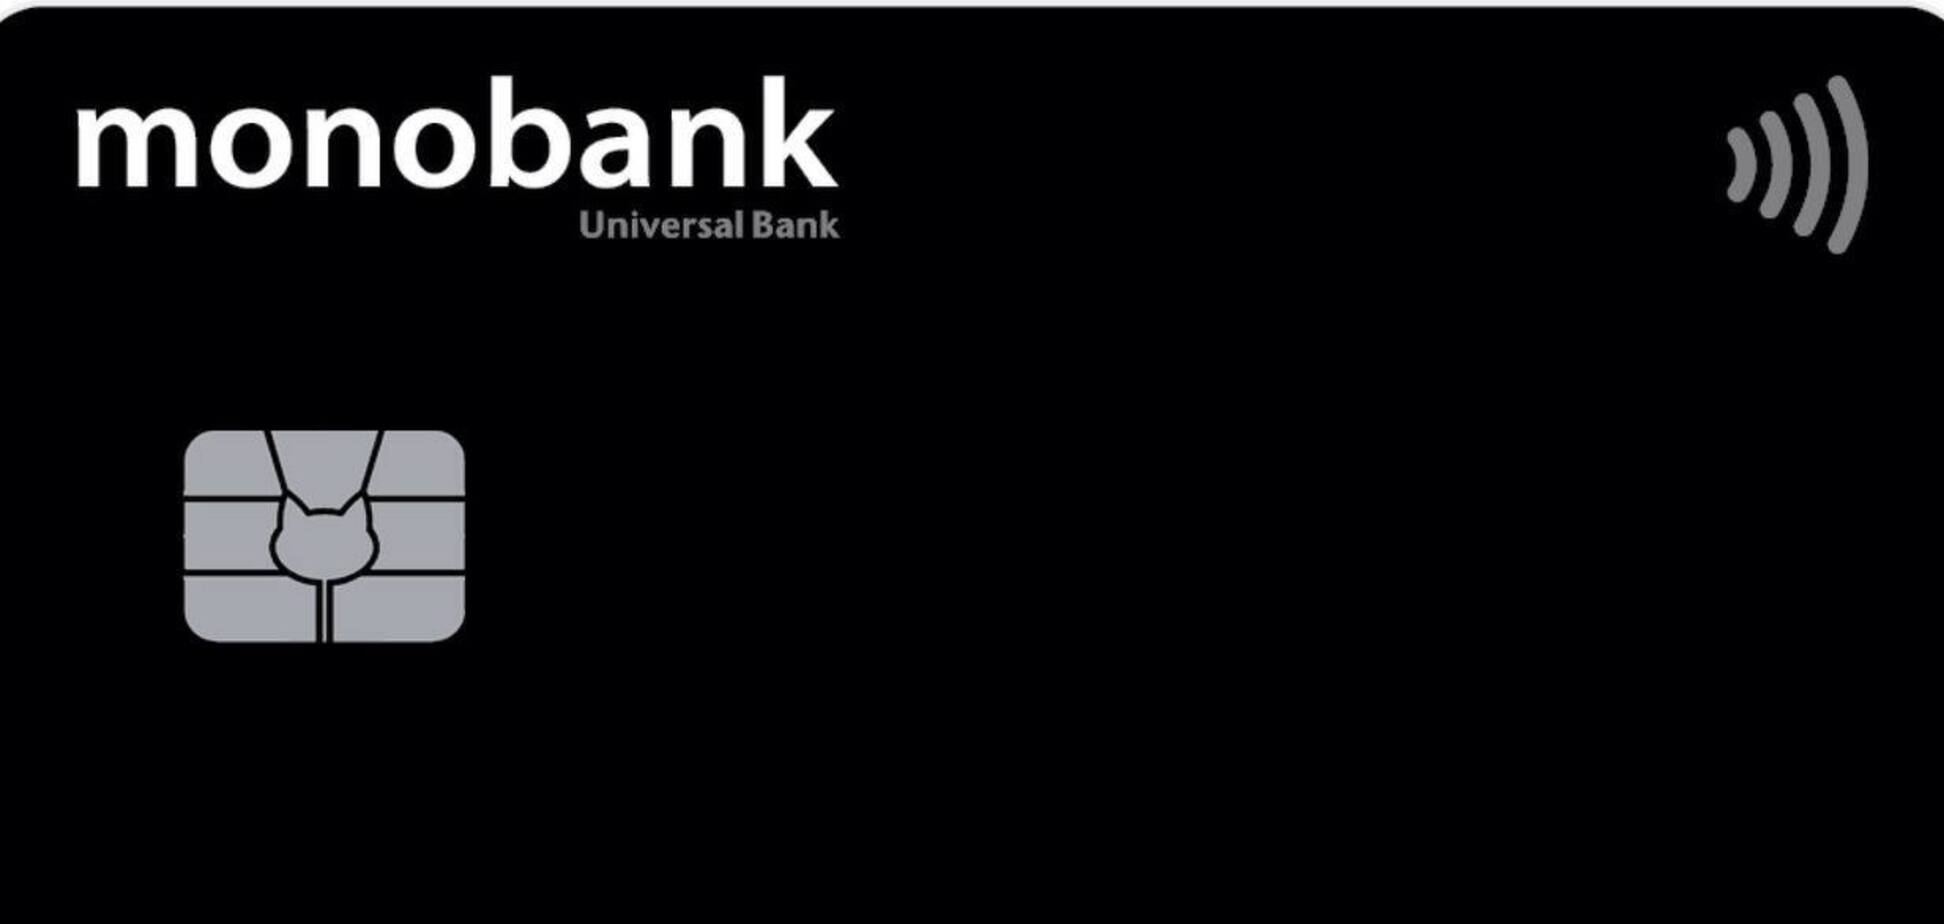 У Monobank стався збій